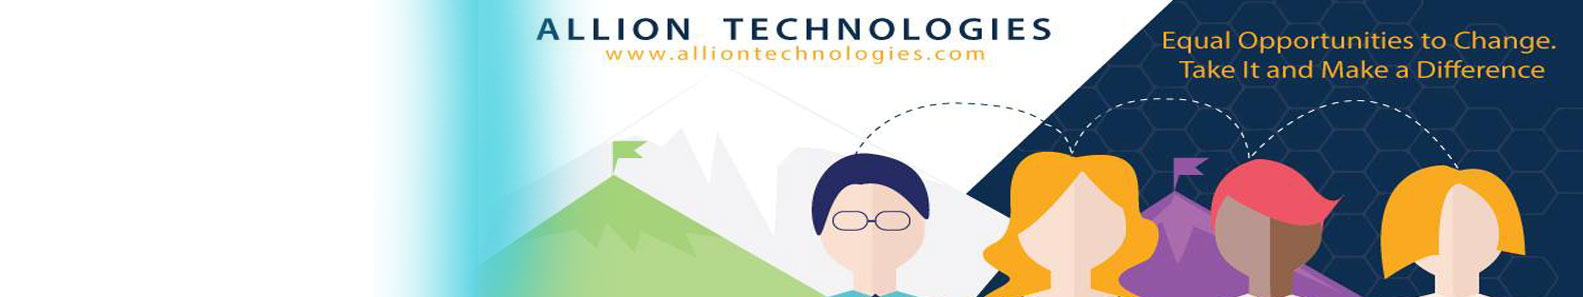 Allion Technologies